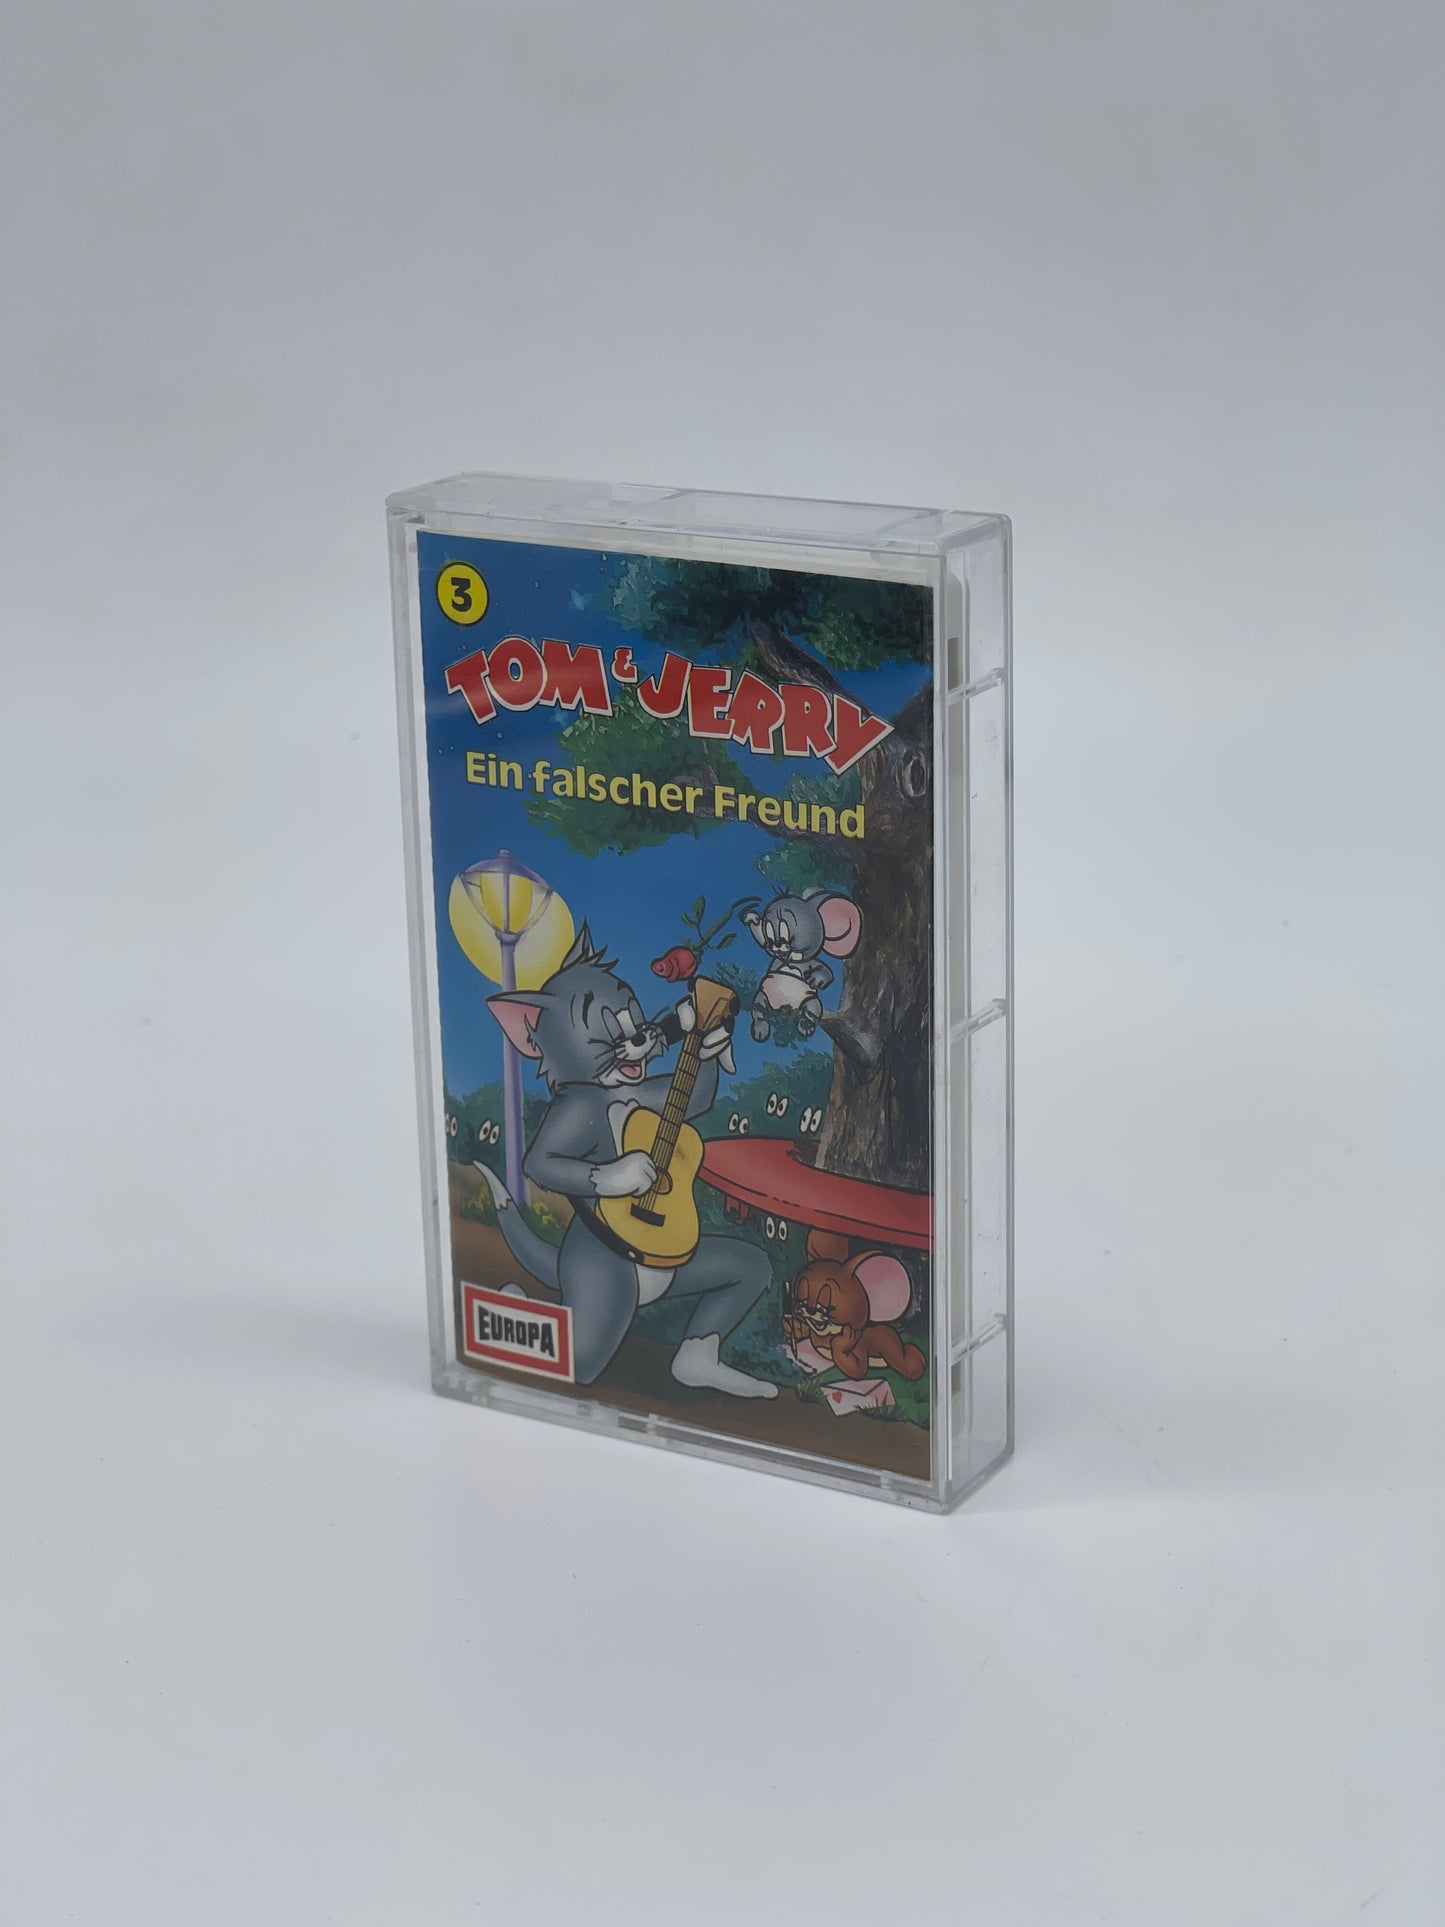 Turner Entertainment "Tom & Jerry" Ein falscher Freund #3 Hörspielkassette (1990)